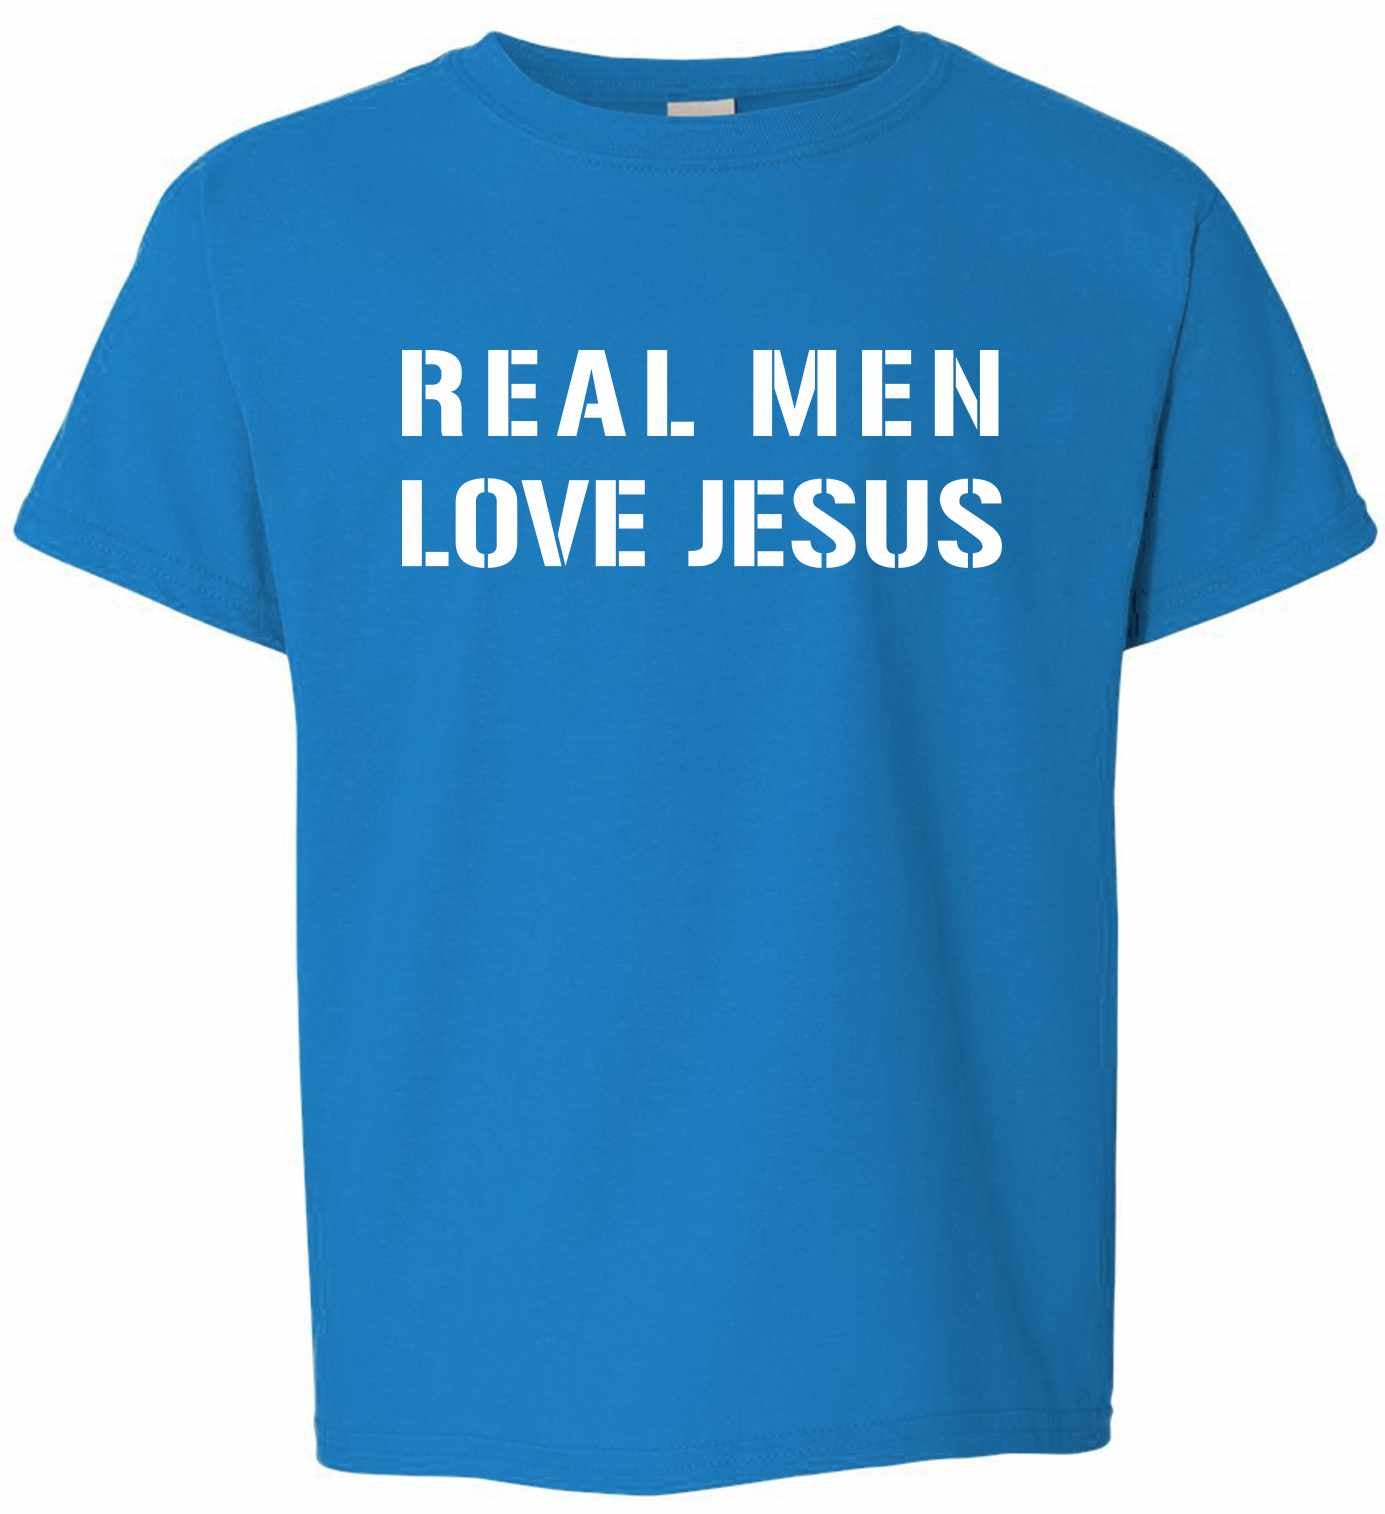 REAL MEN LOVE JESUS on Kids T-Shirt